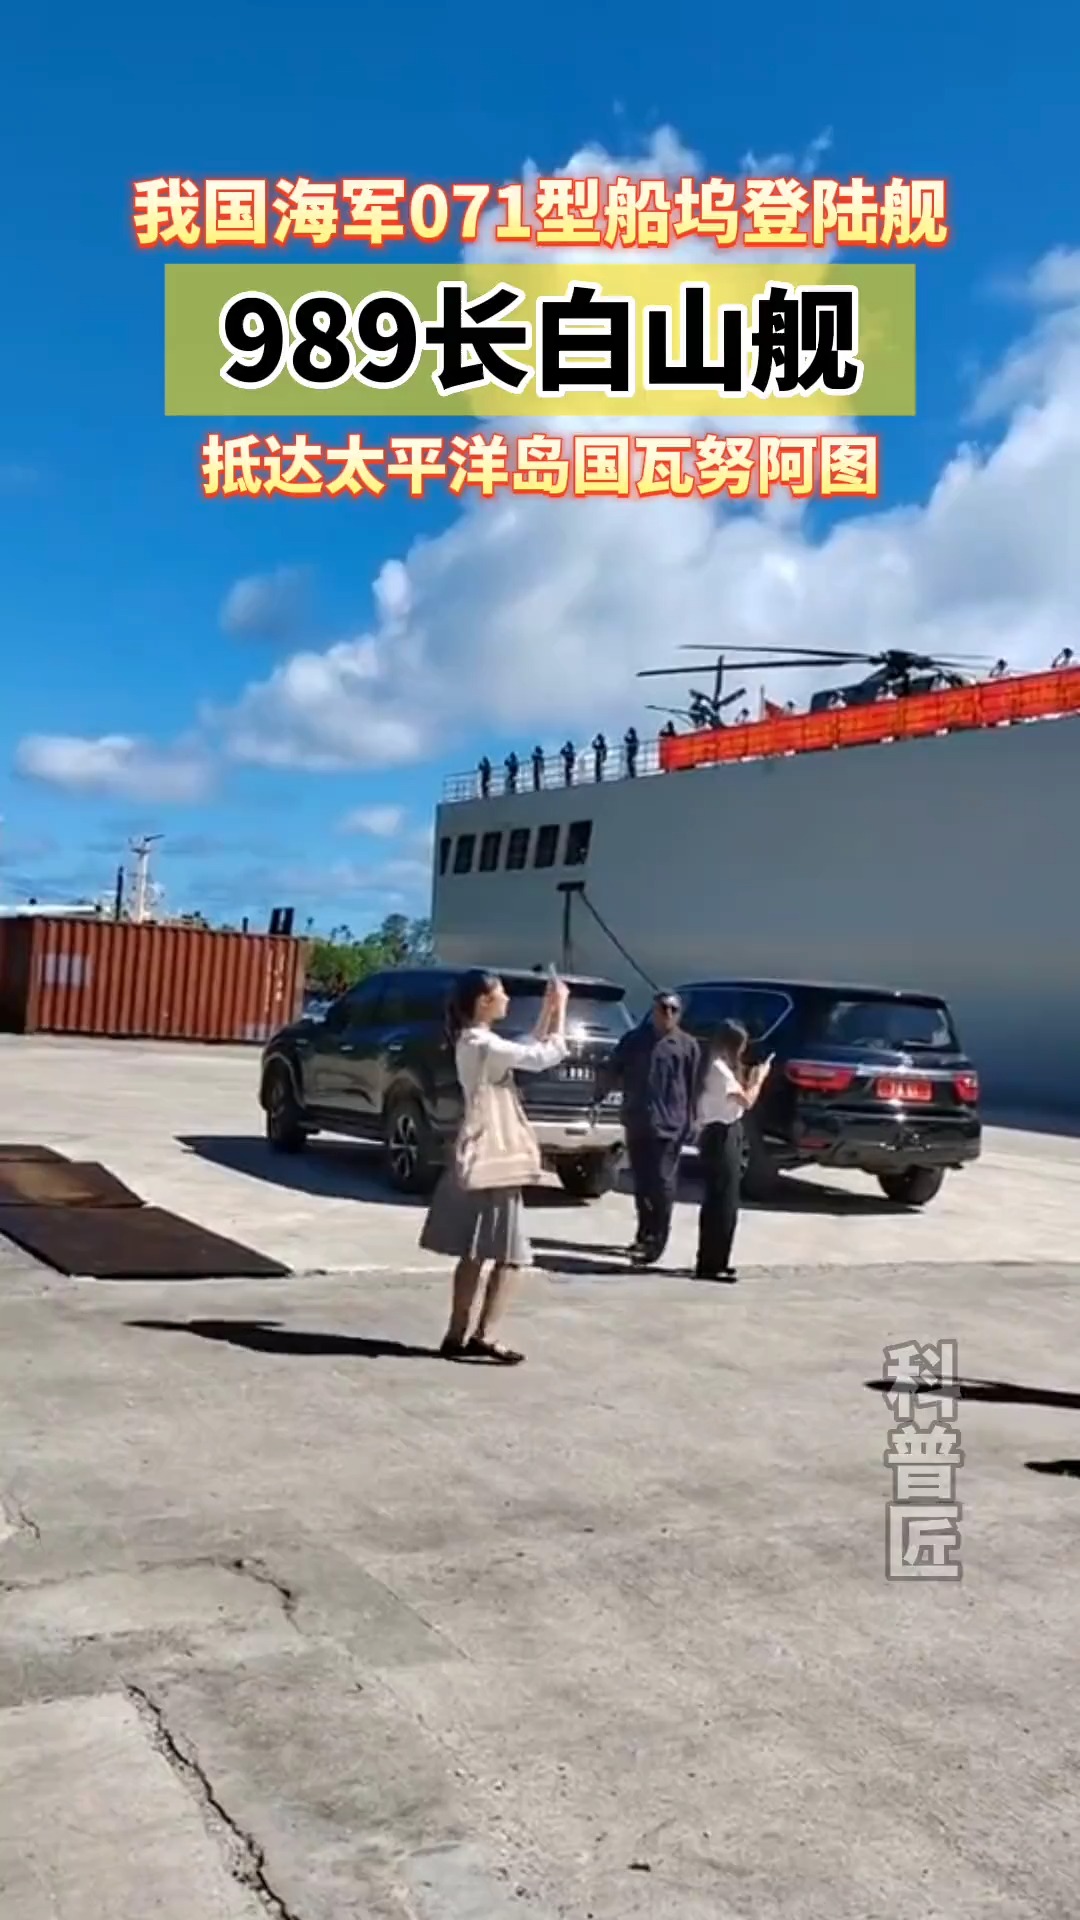 真是“一出国就变大”!这次访问为了增进友谊，我们还给瓦努阿图赠送了包括3万平方米彩钢板，3000盏太阳能应急灯，20吨大米等物资。#中国海军 #看世界 #军舰